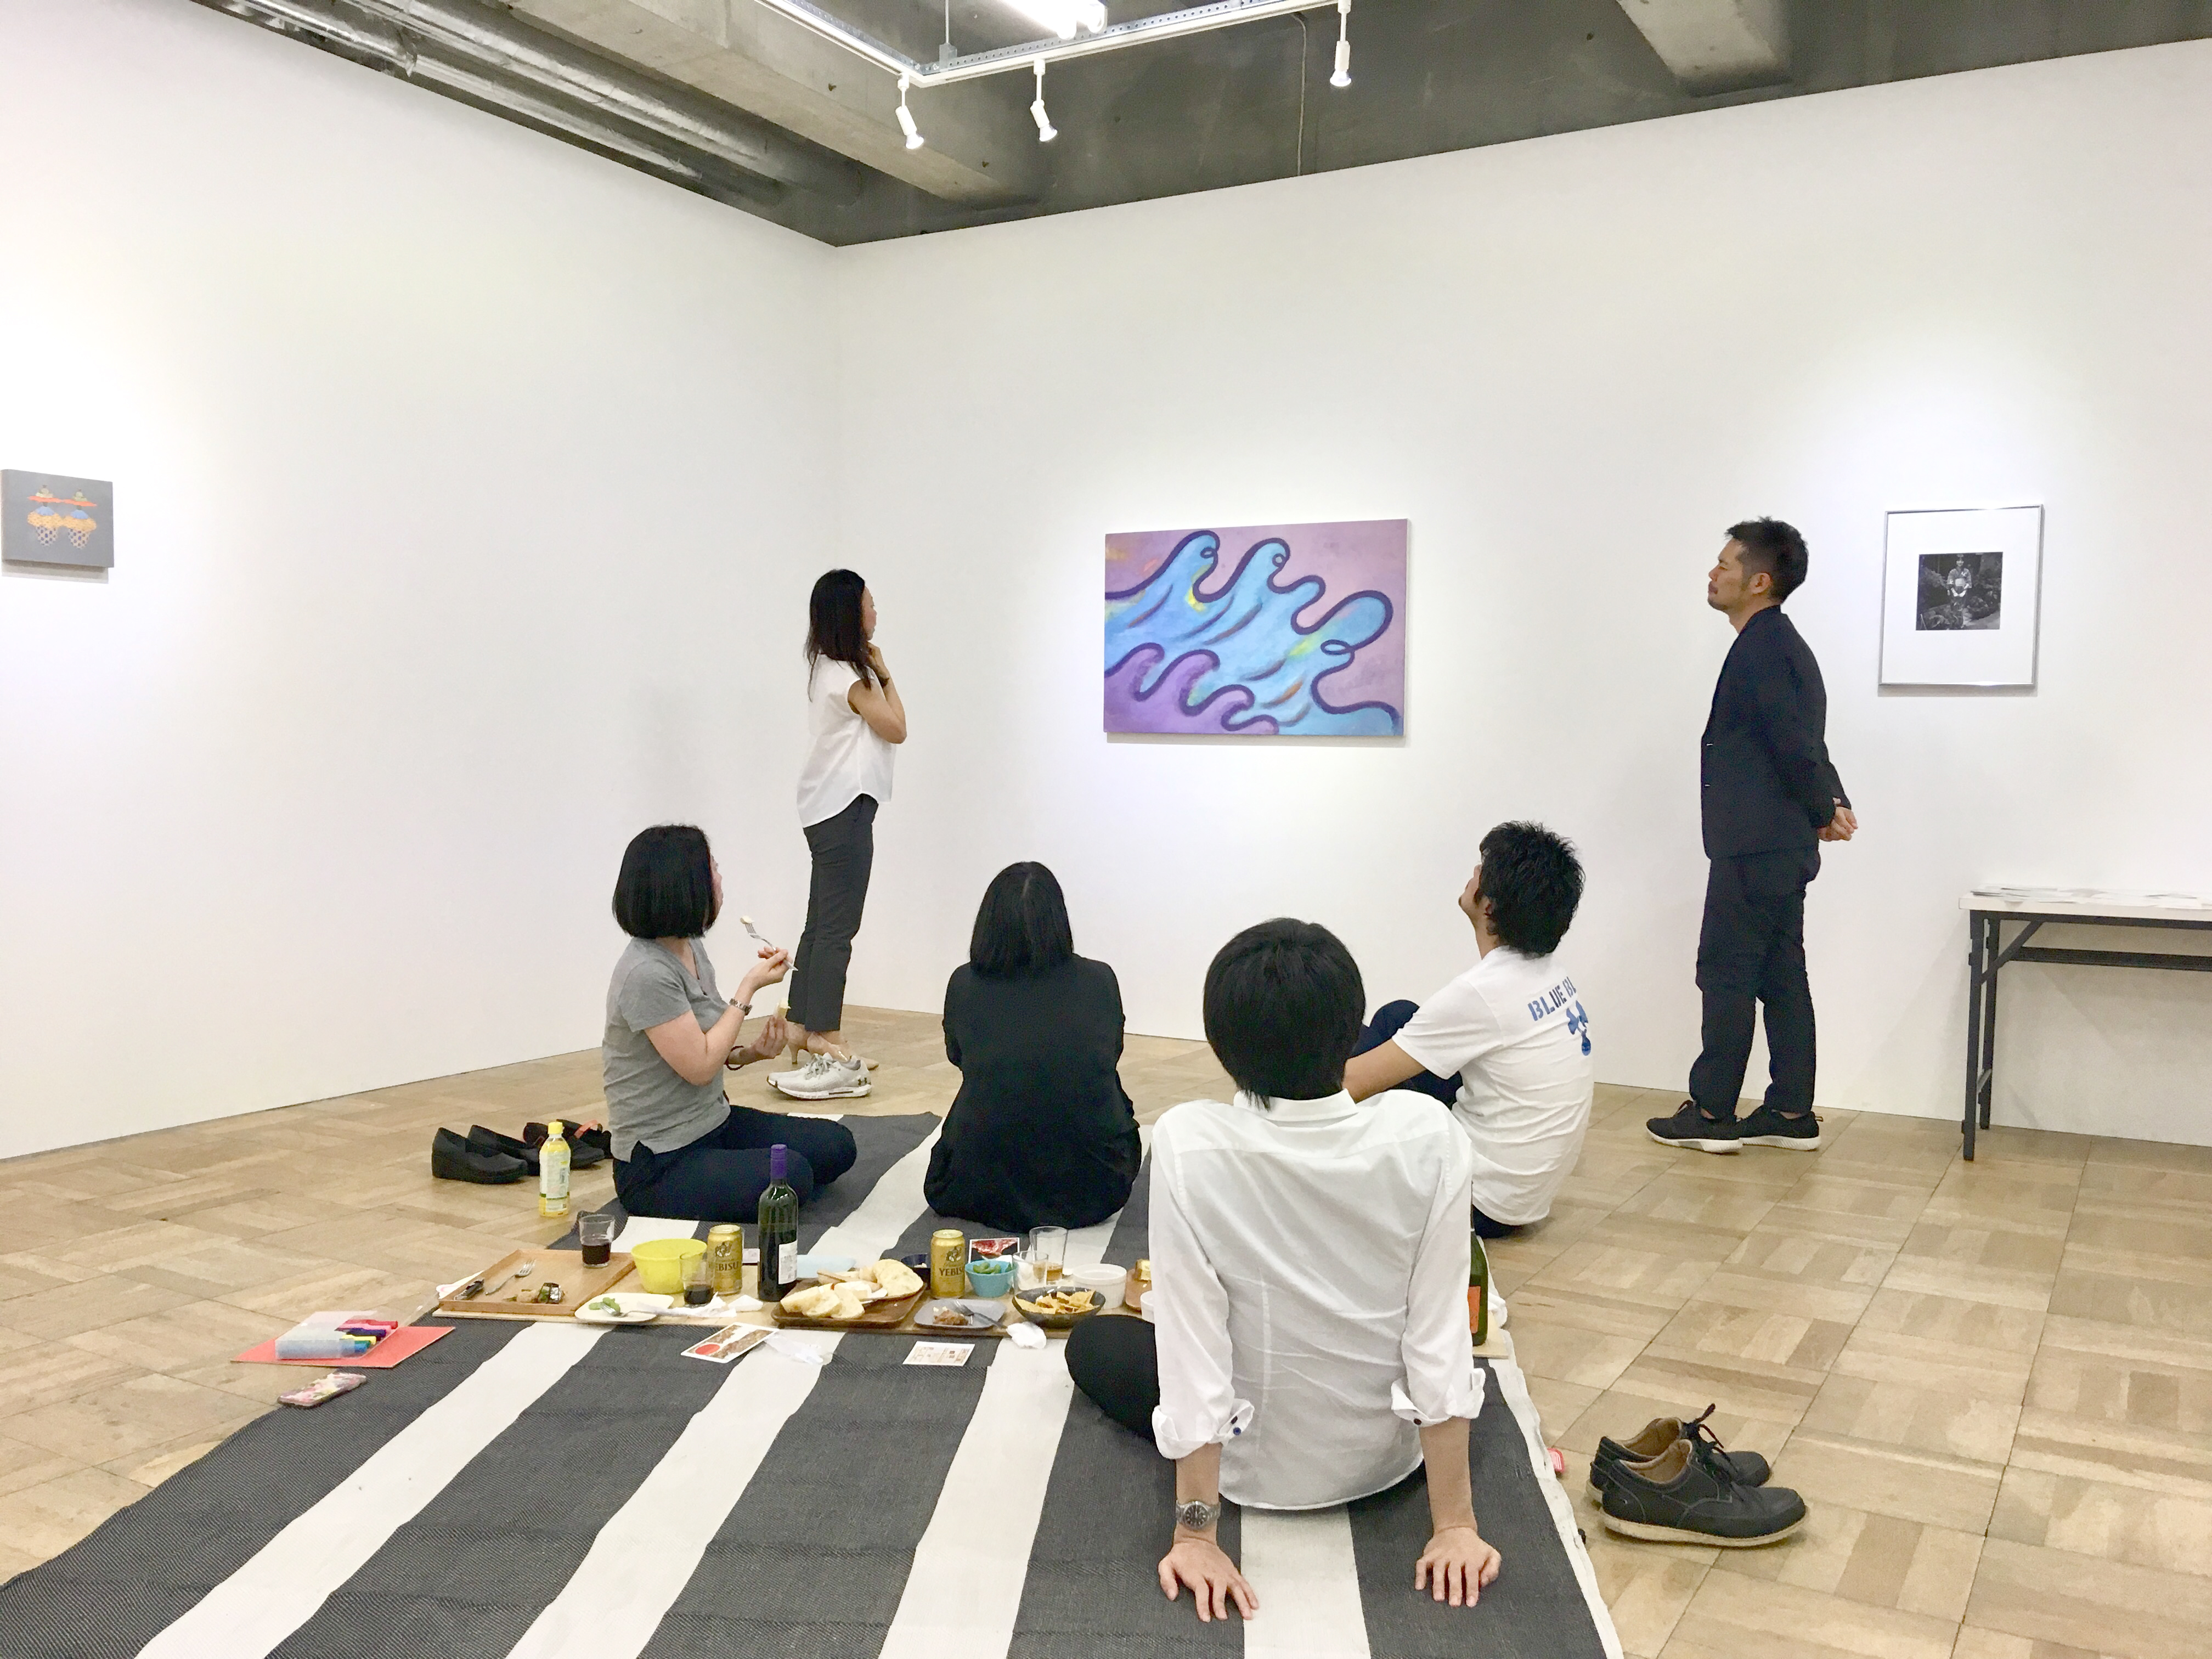 対話型観賞をベースに開催しているアートコミュニケーションランドリー小田川悠によるギャラリーアートピクニックイベント